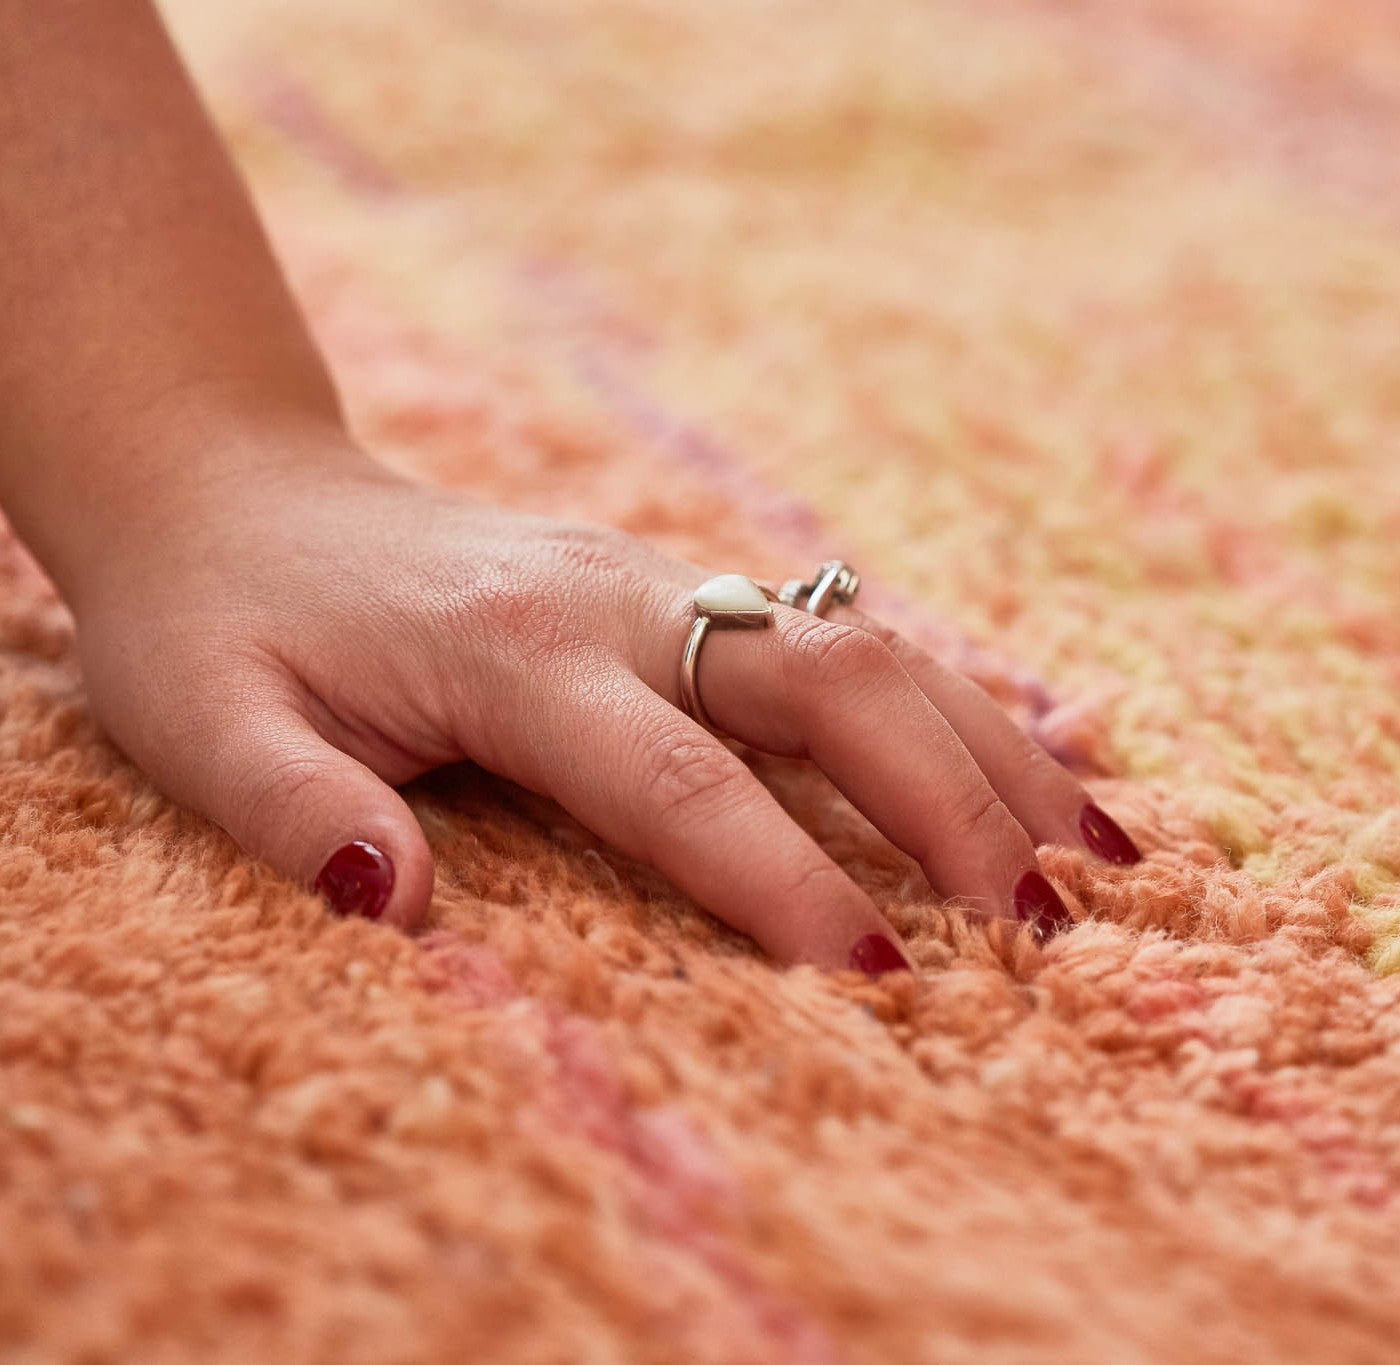 dettaglio di una mano femminile appoggiata su un morbido tappeto